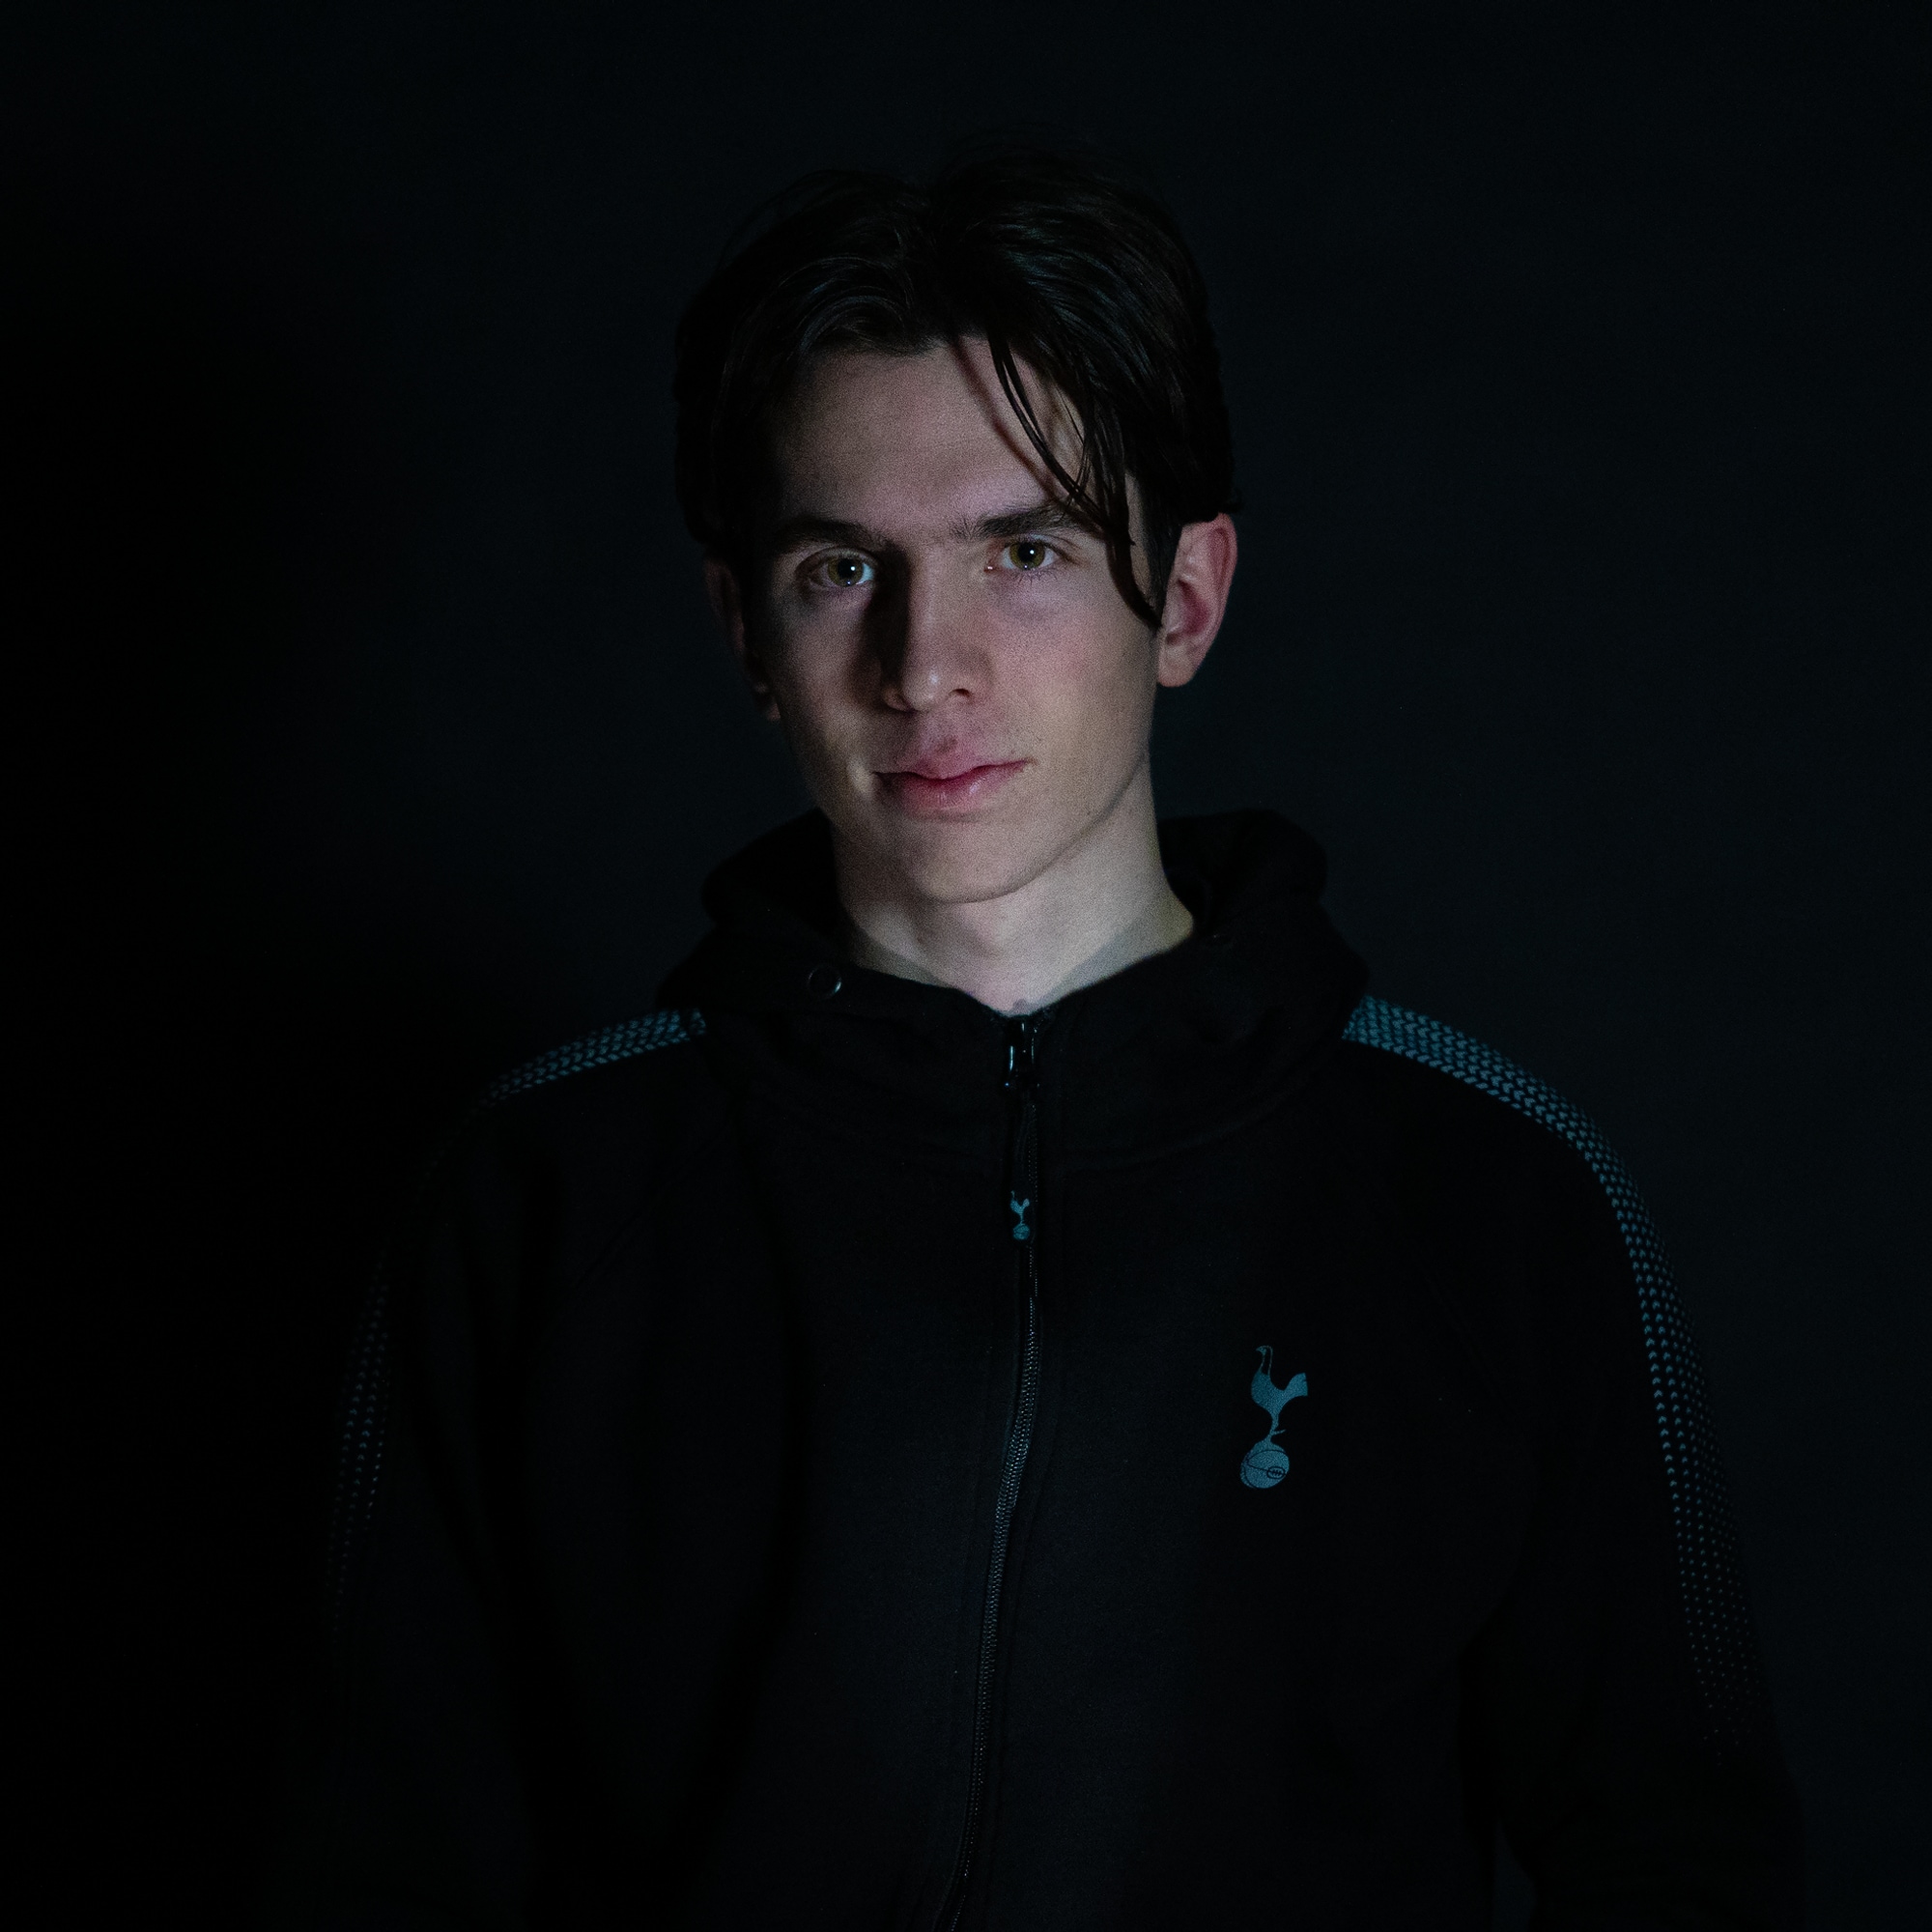 Andreas (22) står i et helt mørkt rom. Kun ansiktet er lyst opp fra undersiden med et kaldt lyst. Han ser alvorlig inn i kameraet. Han har mørkt hår og lys hud. 